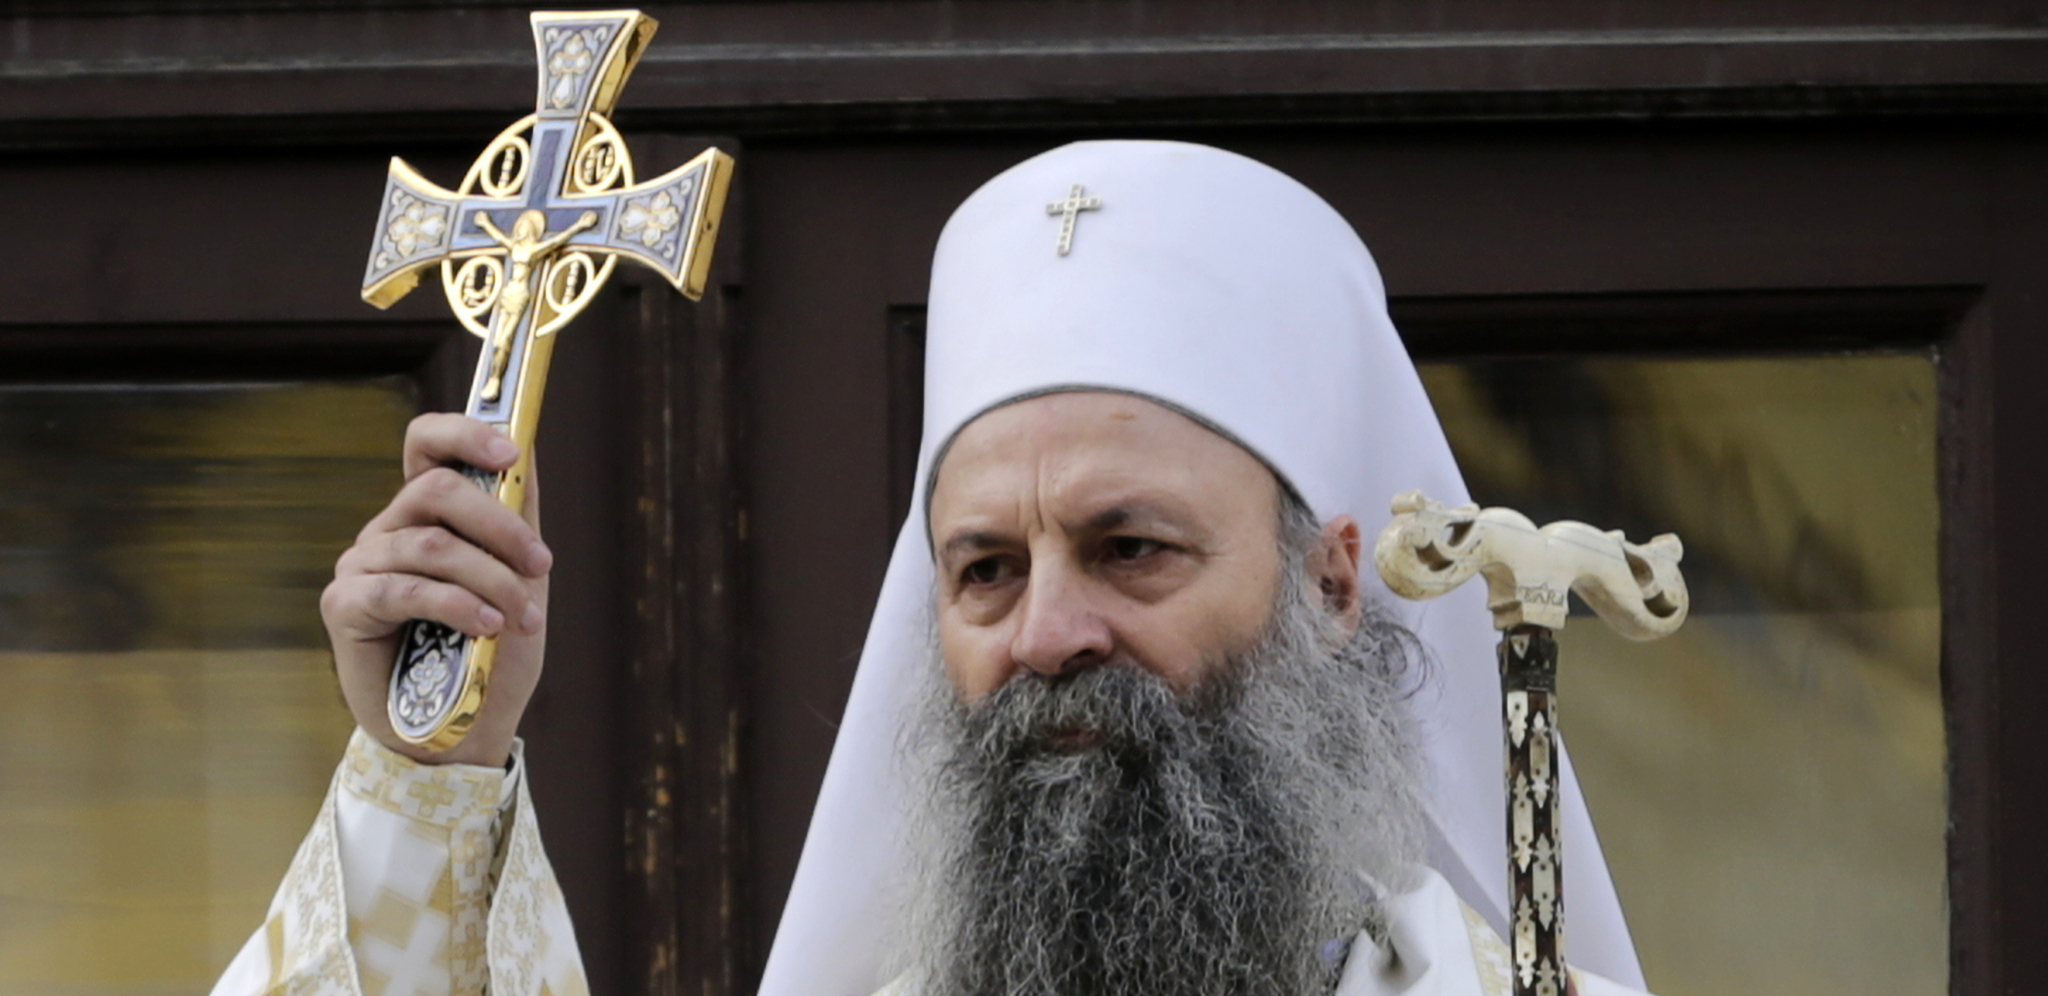 SLIČNI I LIKOM I DELOM Rođeni brat patrijarha Porfirija neverovatno podseća na njega (FOTO/VIDEO)